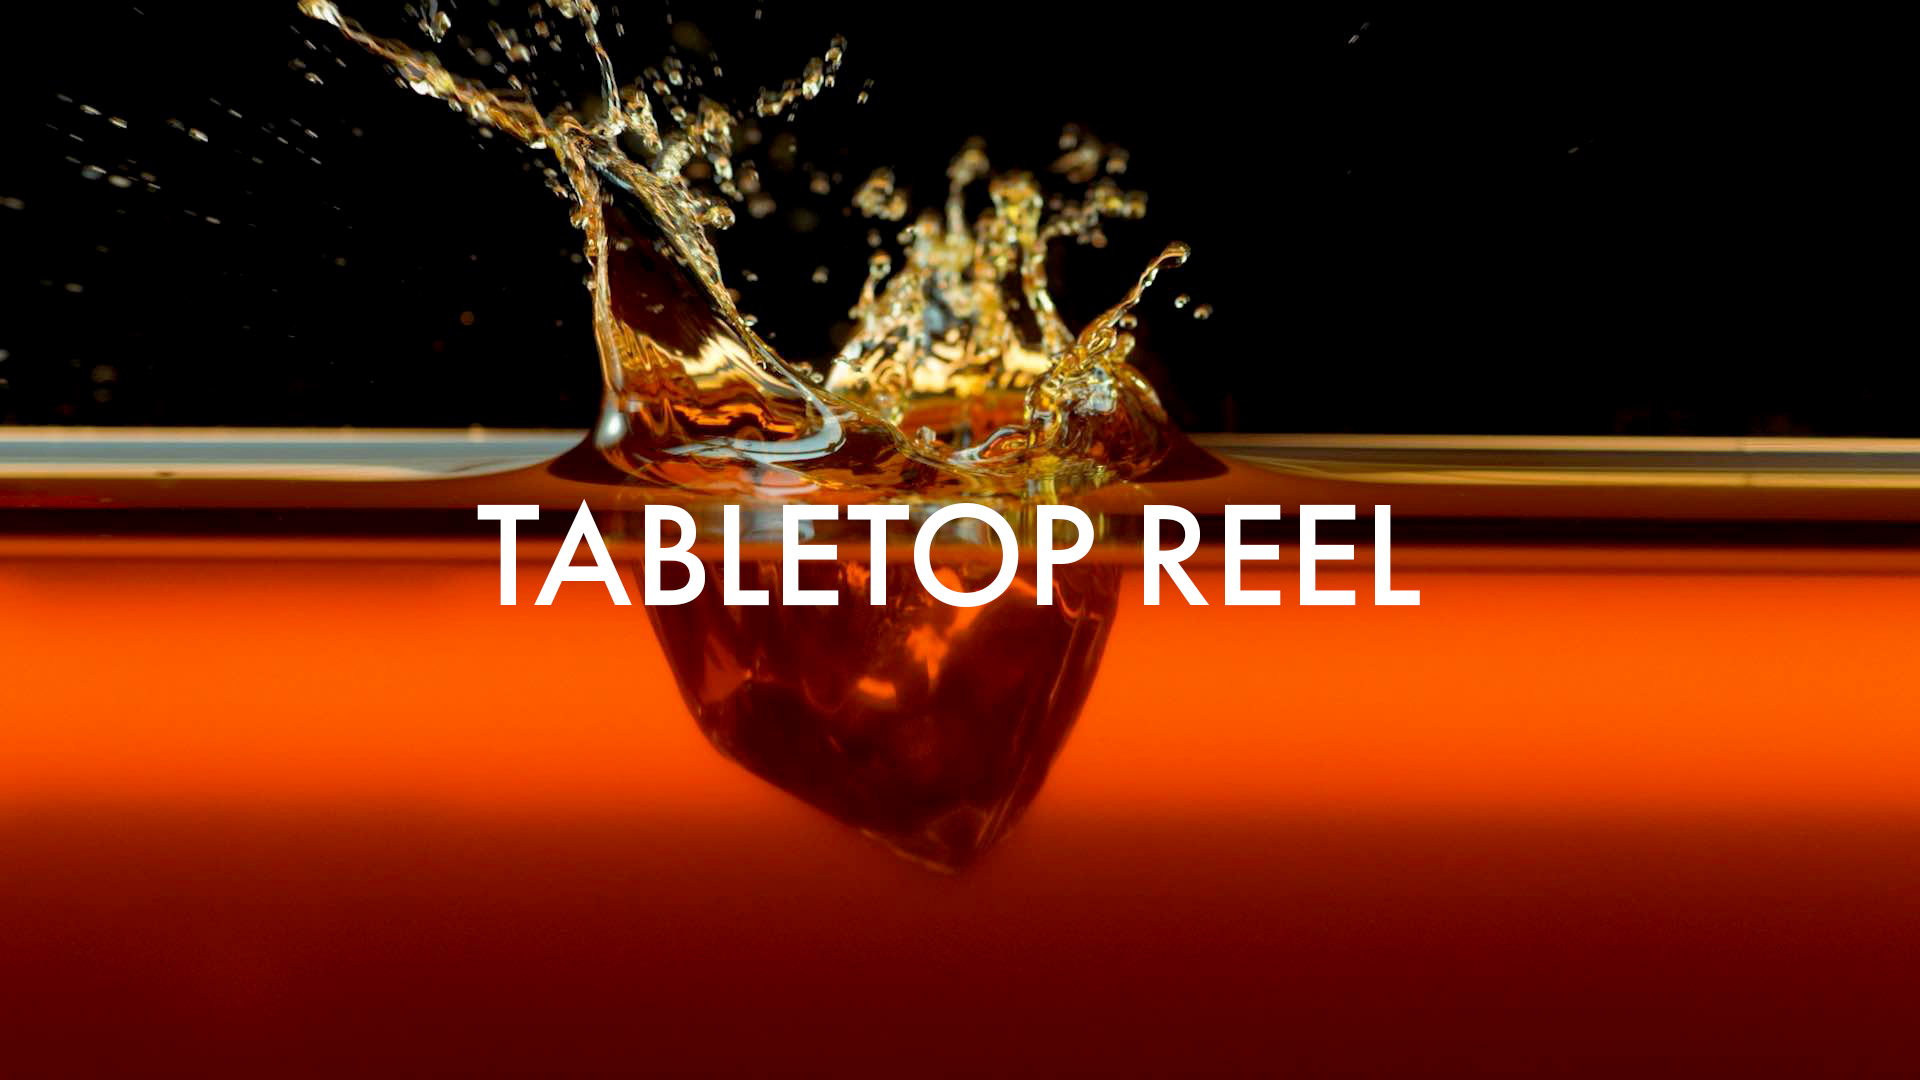 TableTop Reel